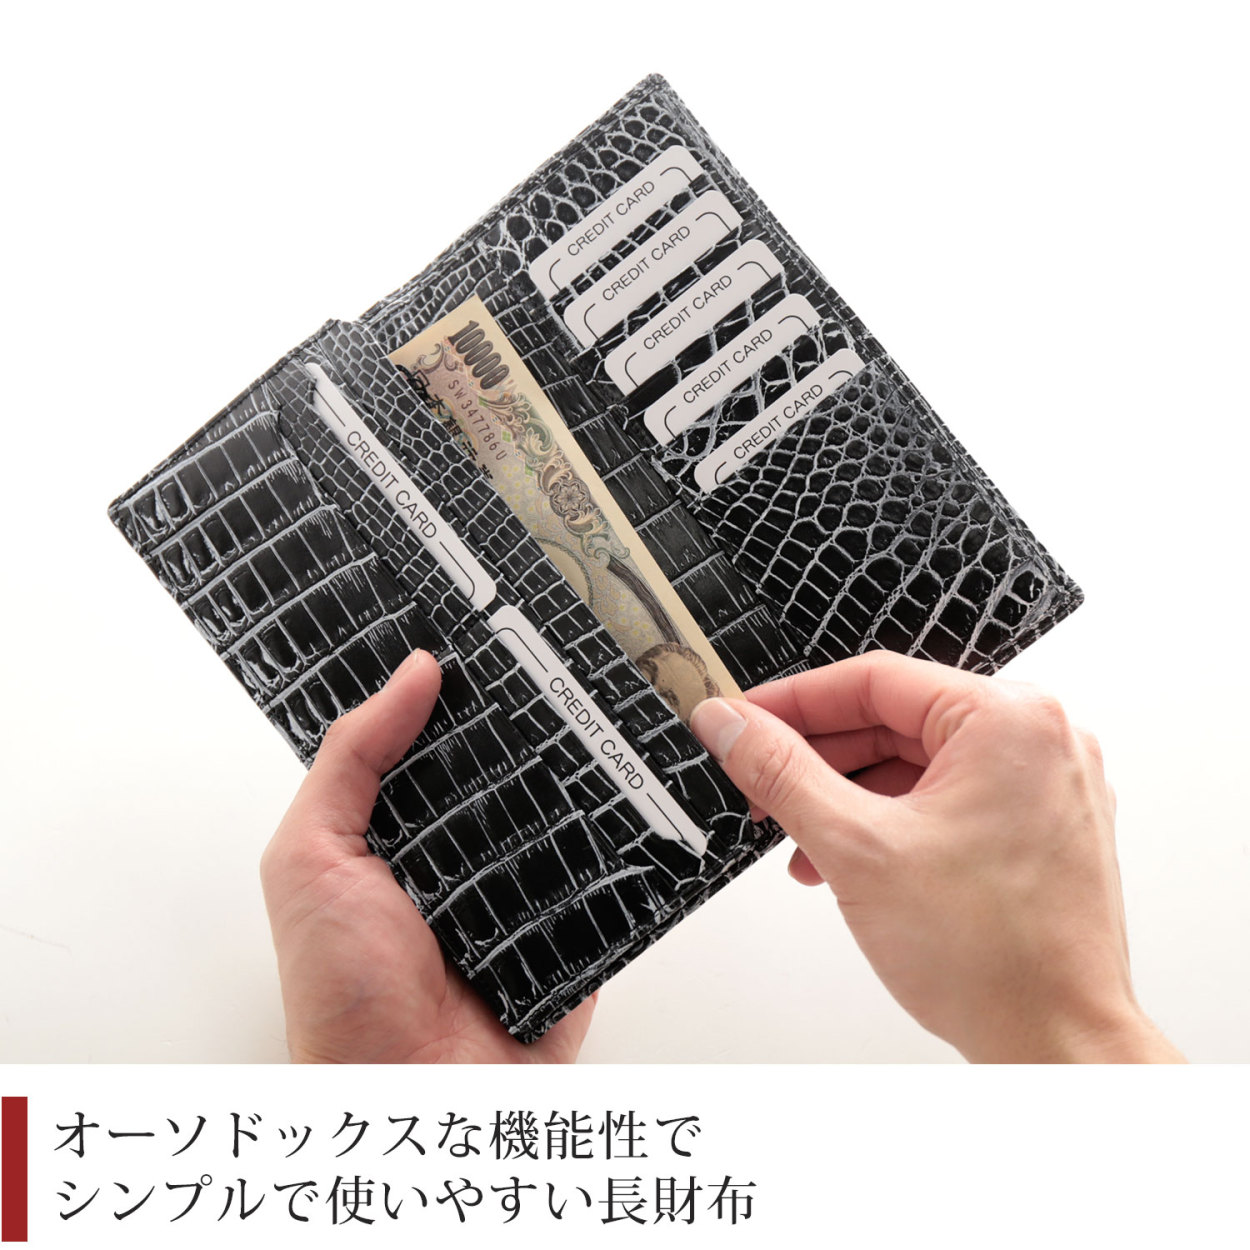 クロコダイル 長財布 センター取り 一枚革 無双 日本製 メタリック